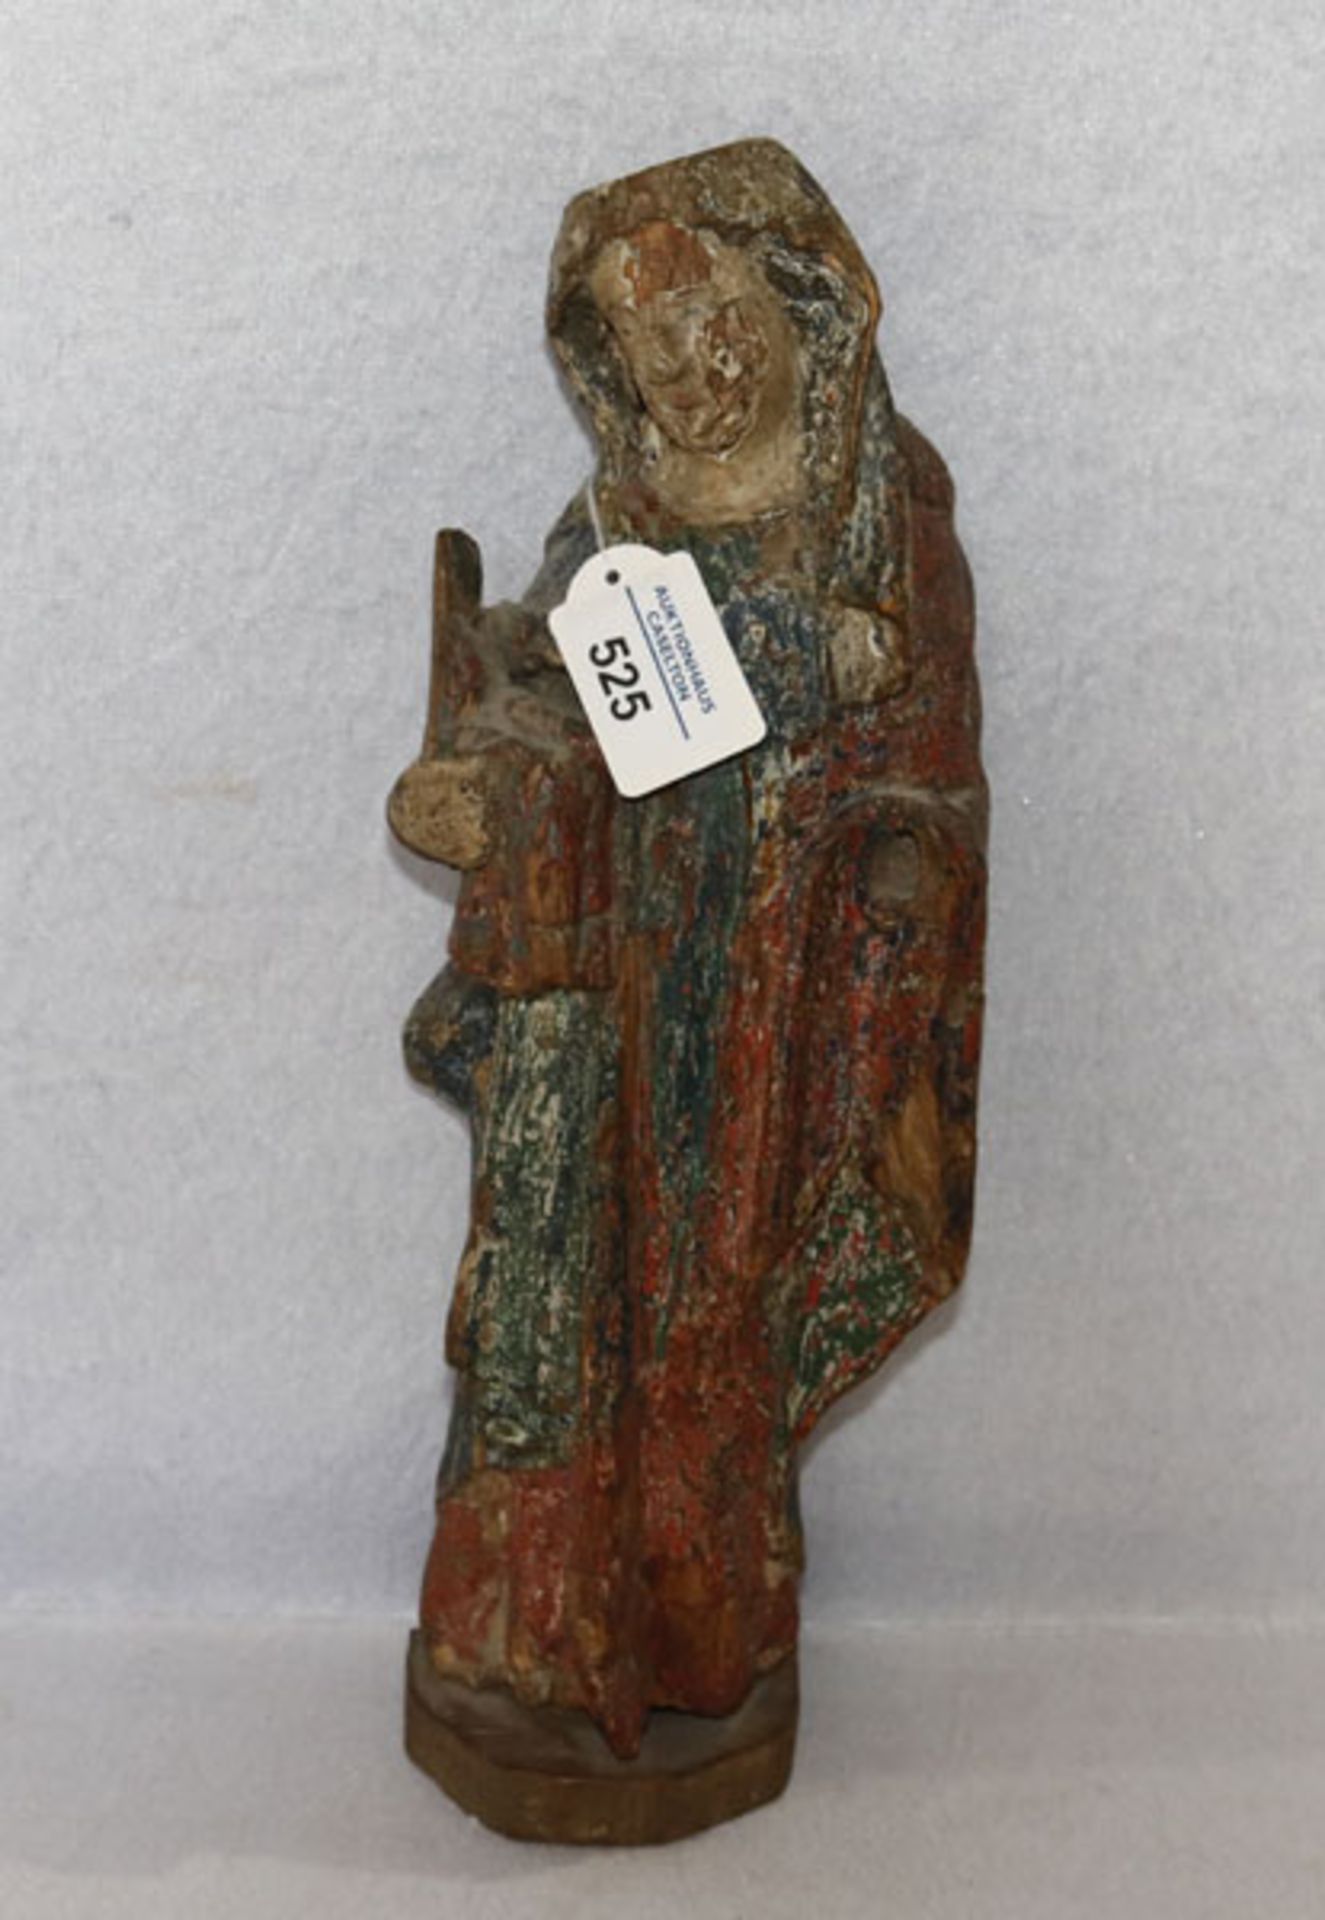 Holz Figurenskulptur 'Maria', Restfassung, um 1800, stark beschädigt und nicht komplett, H 37 cm